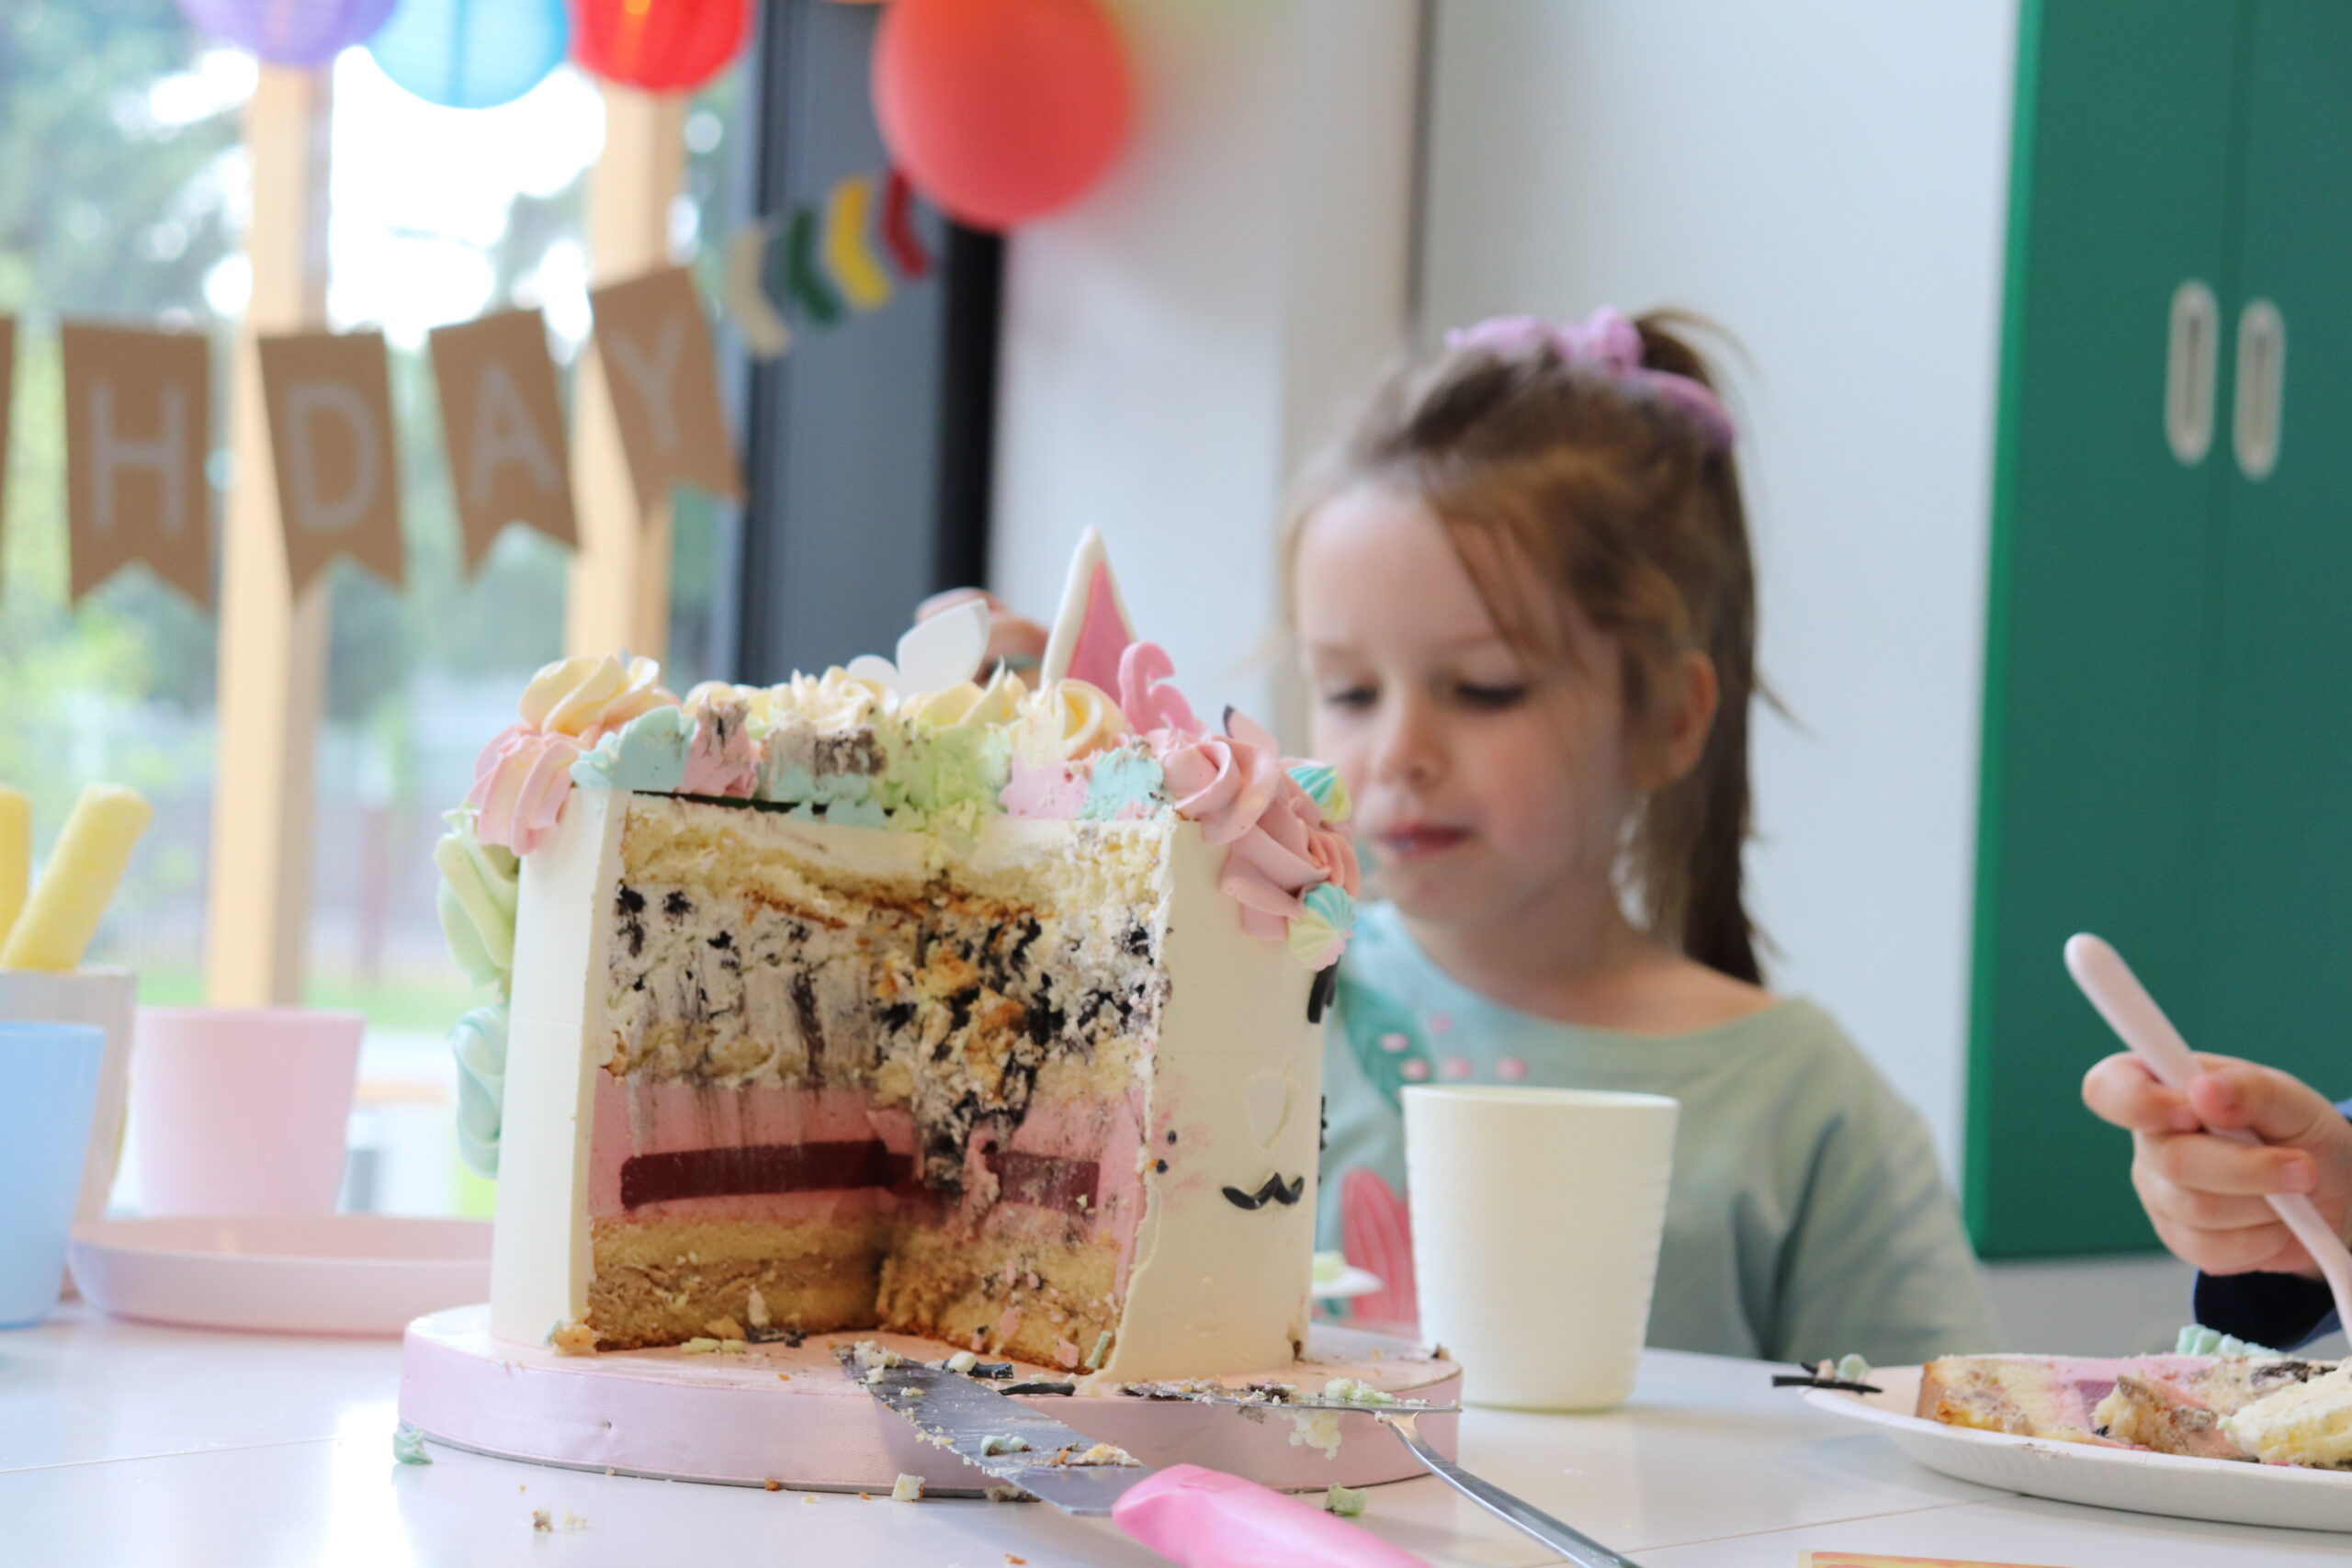 Na zdjęciu jest dziewczynka i jej tort urodzinowy